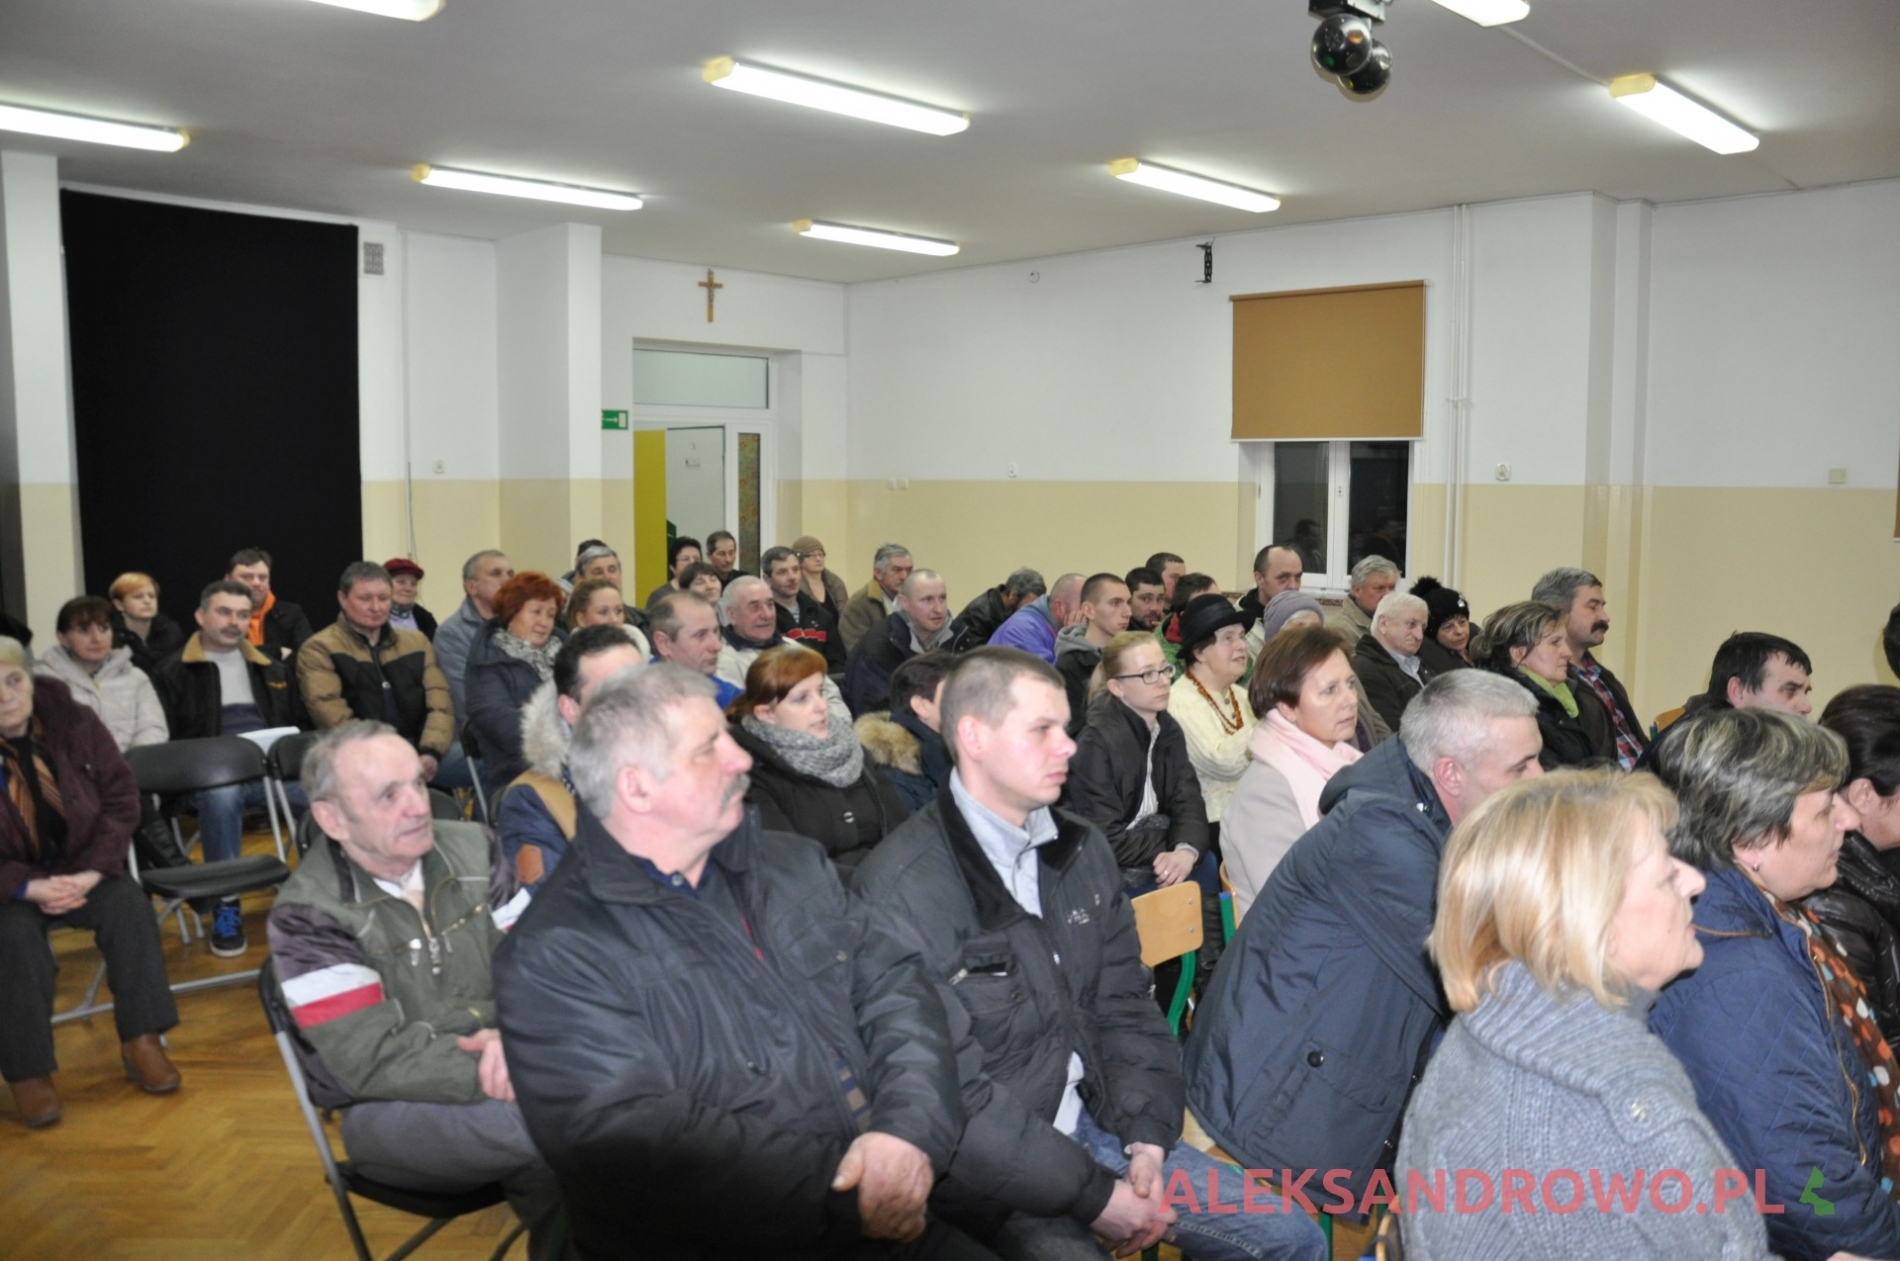 Zebranie mieszkańców Aleksandrowa z wójtem w sprawie utworzenia sołectwa 20.02.2015